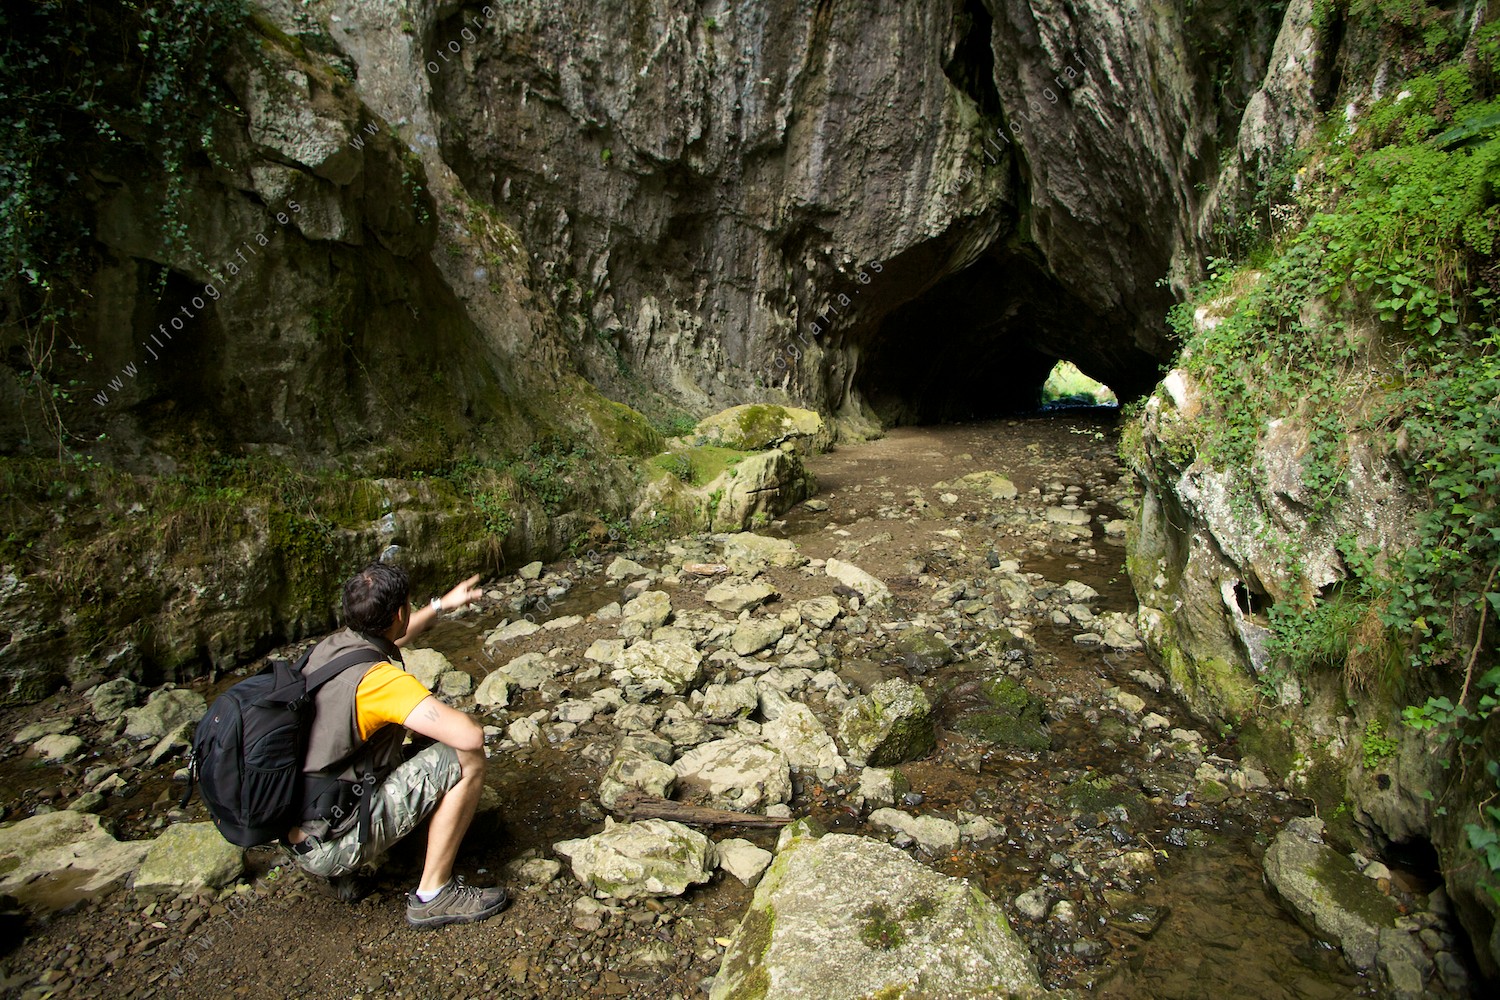 Una de las cuevas que hay en la ruta a la gran cueva de Baltzola, es un tunel natural, con un fotógrafo compañero